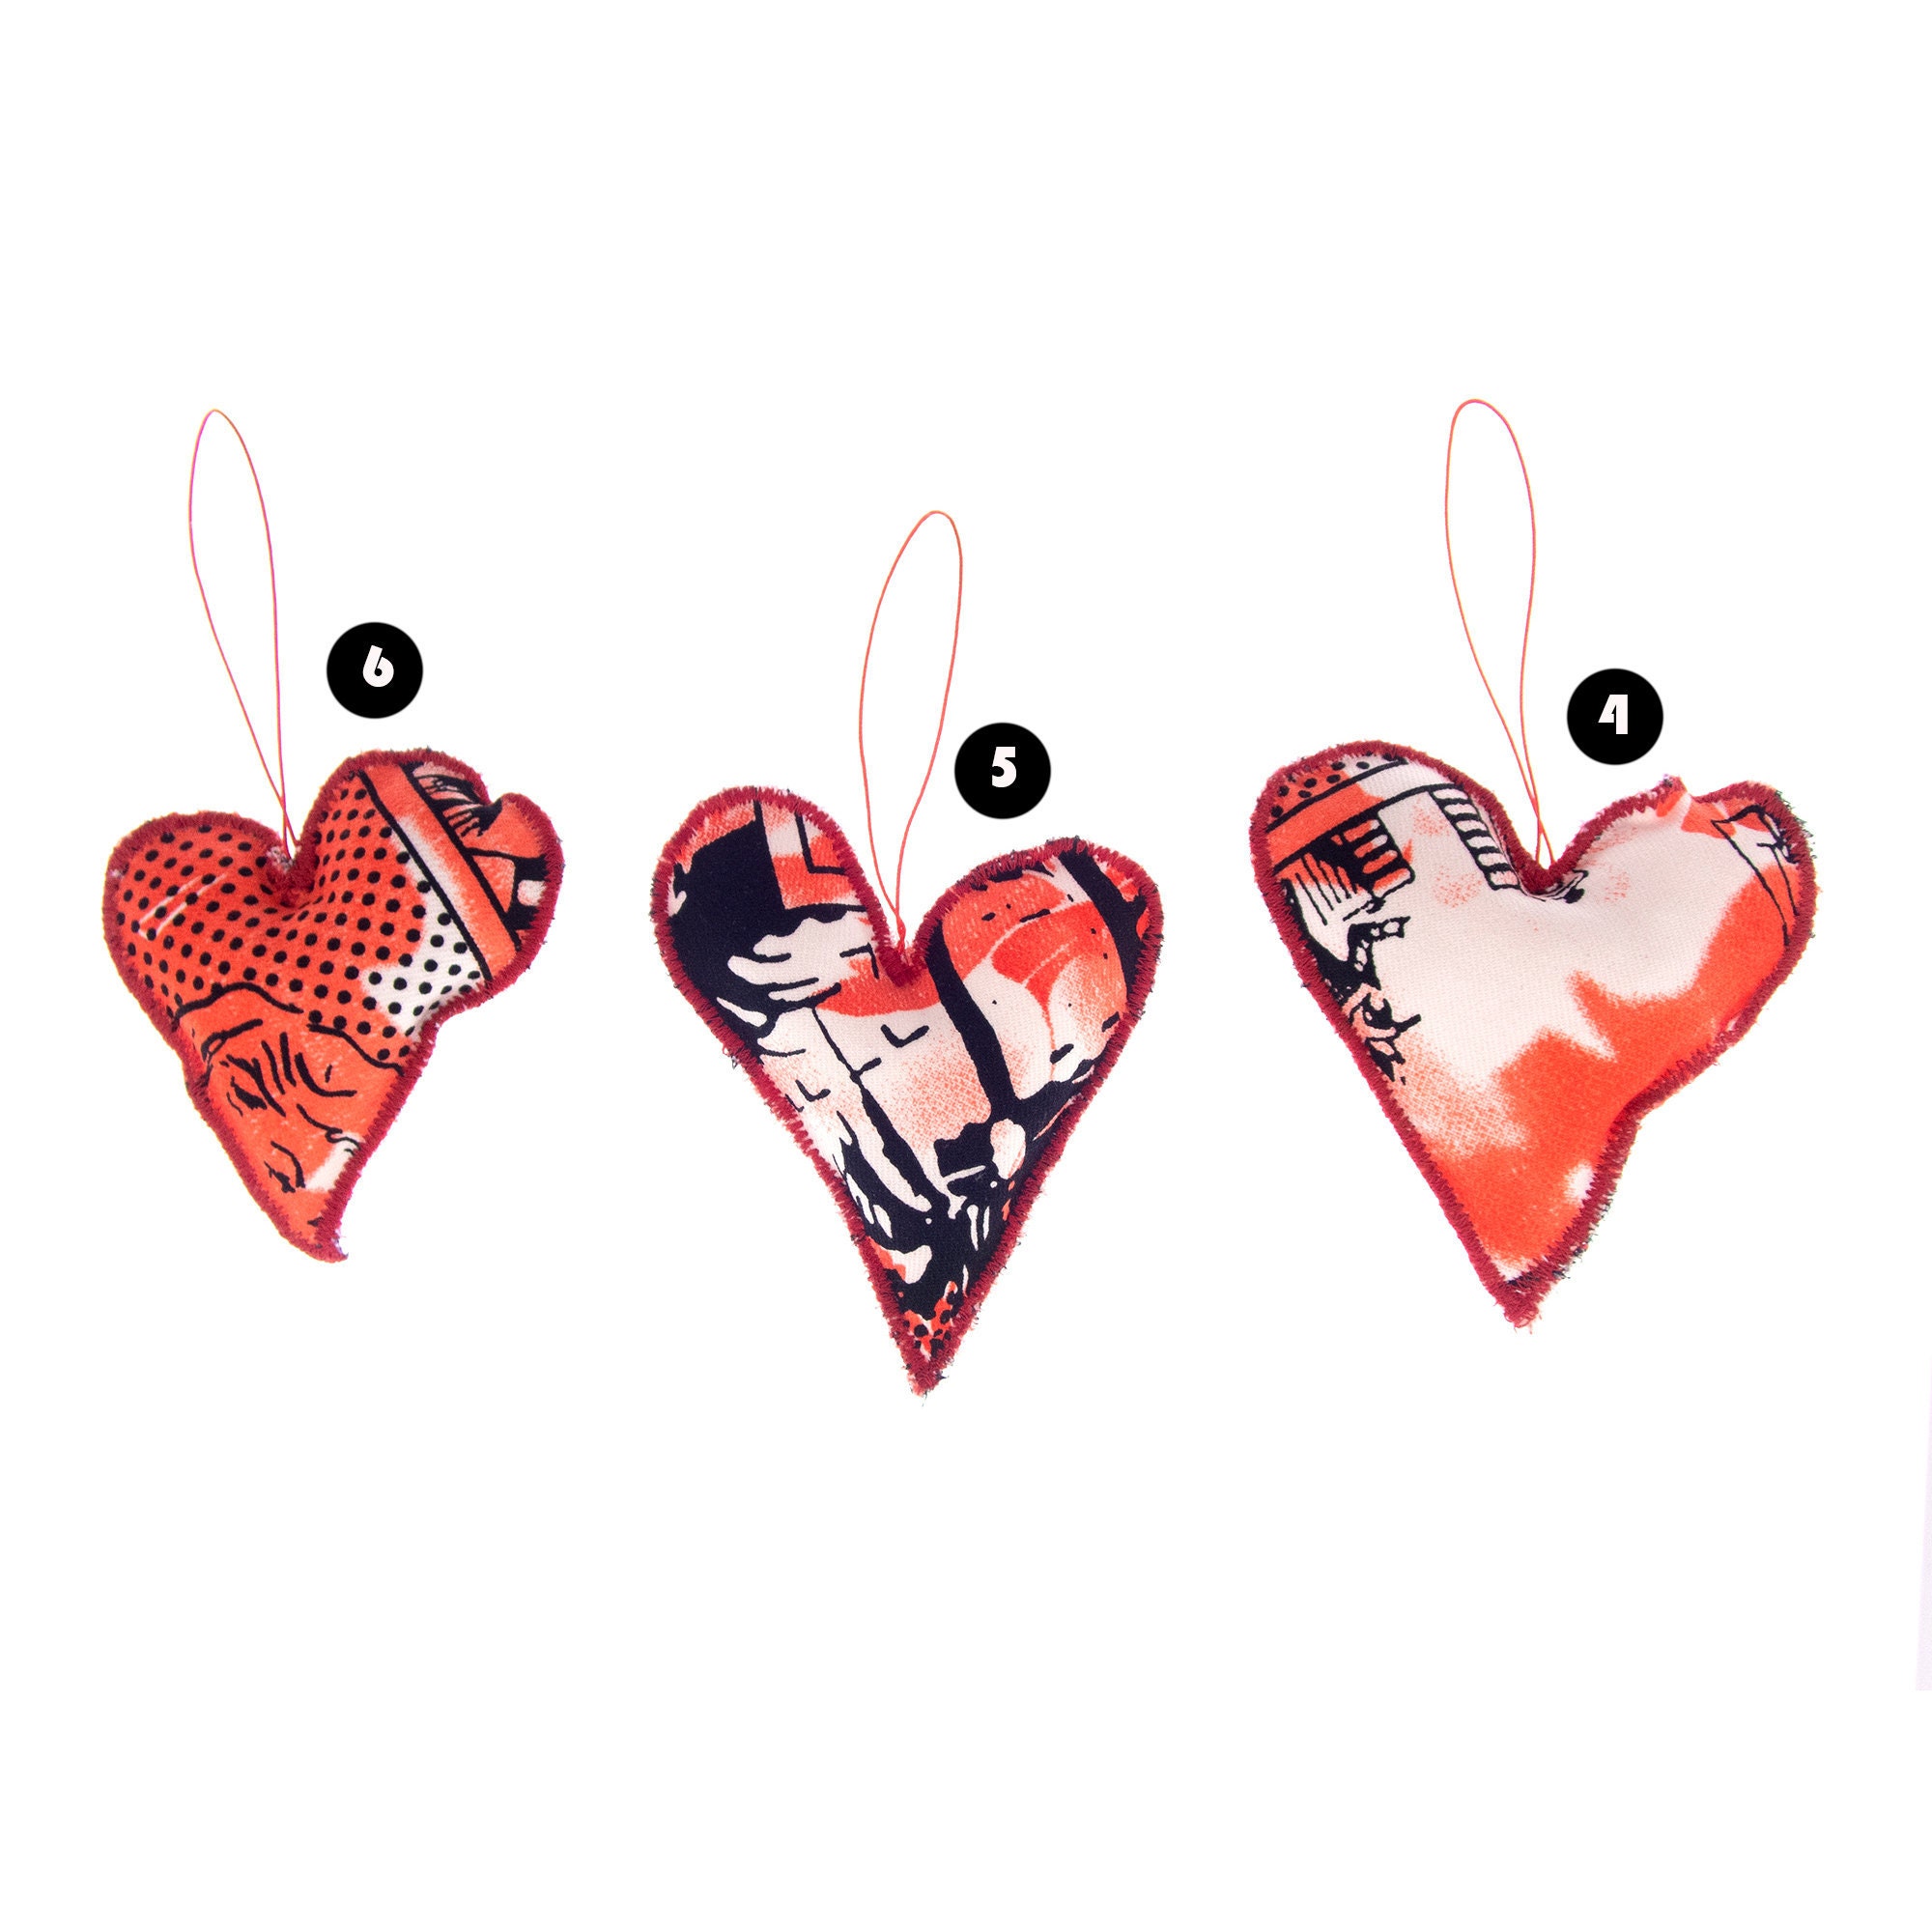 handmade valentines gift for men stuffed heart ornament favor